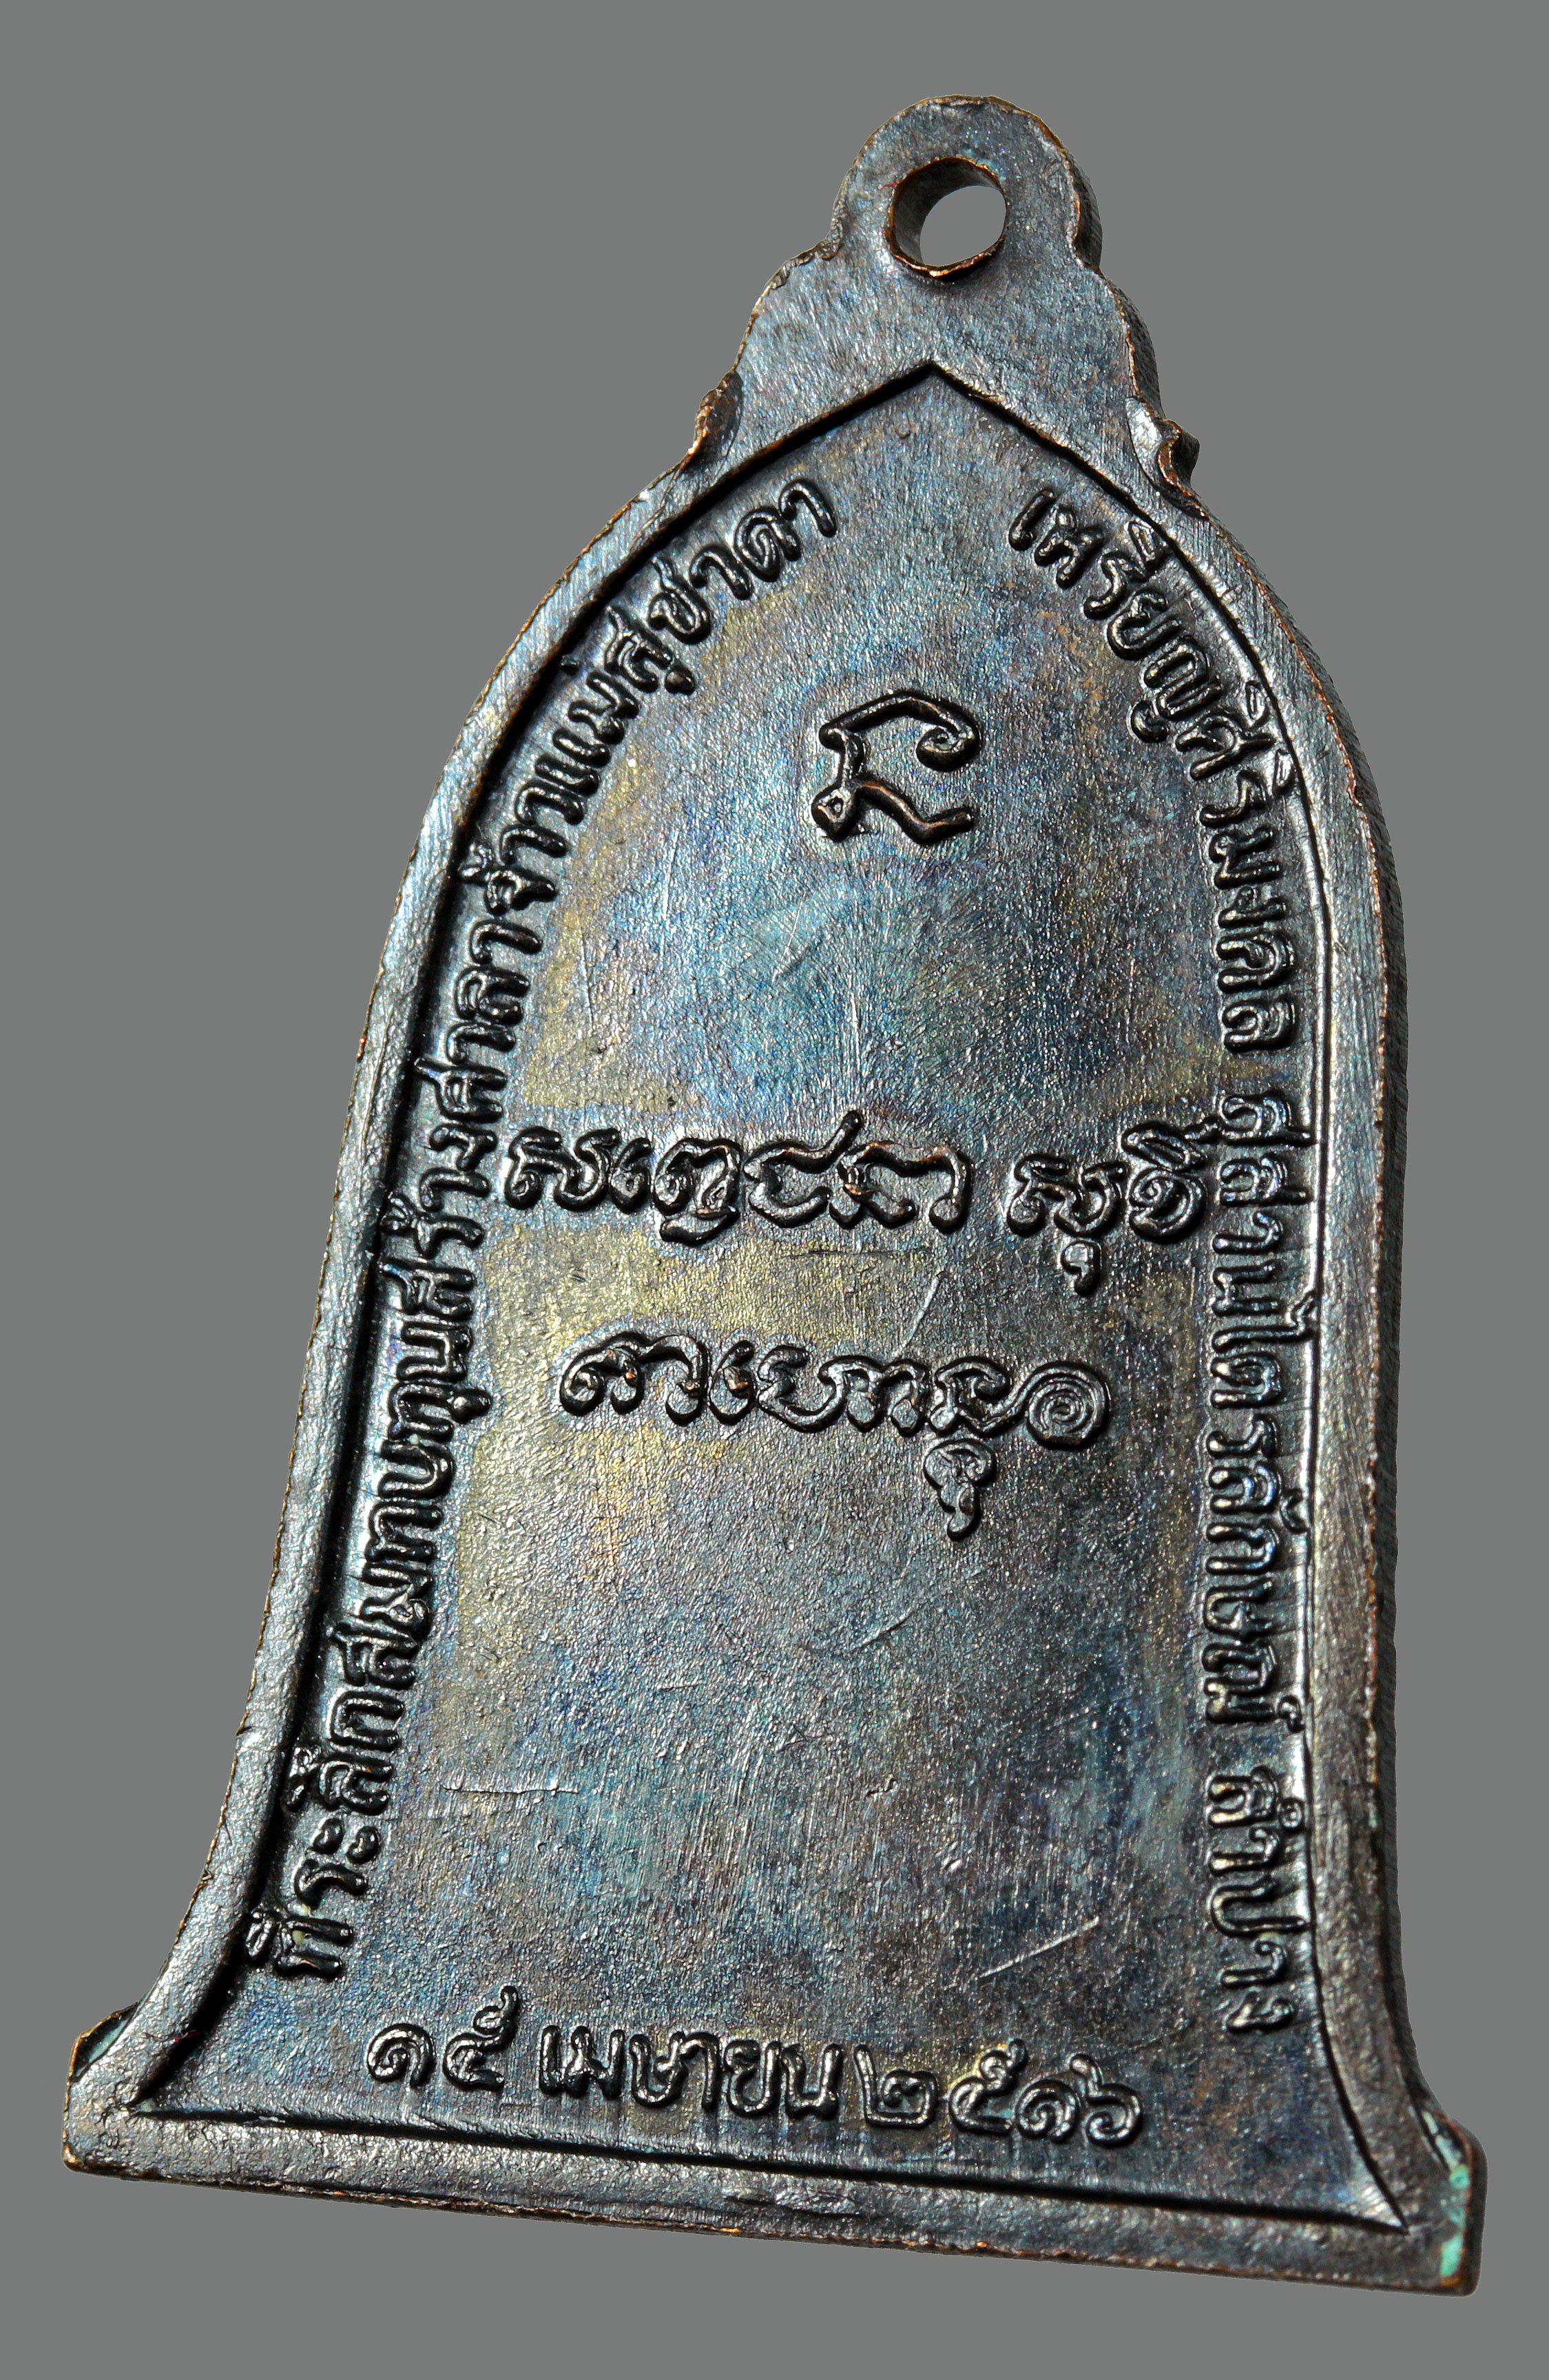 เหรียญระฆัง หลวงพ่อเกษม เขมโก ปี 2516 บล็อกเสาอากาศ(นิยม) เนื้อทองแดงรมดำ